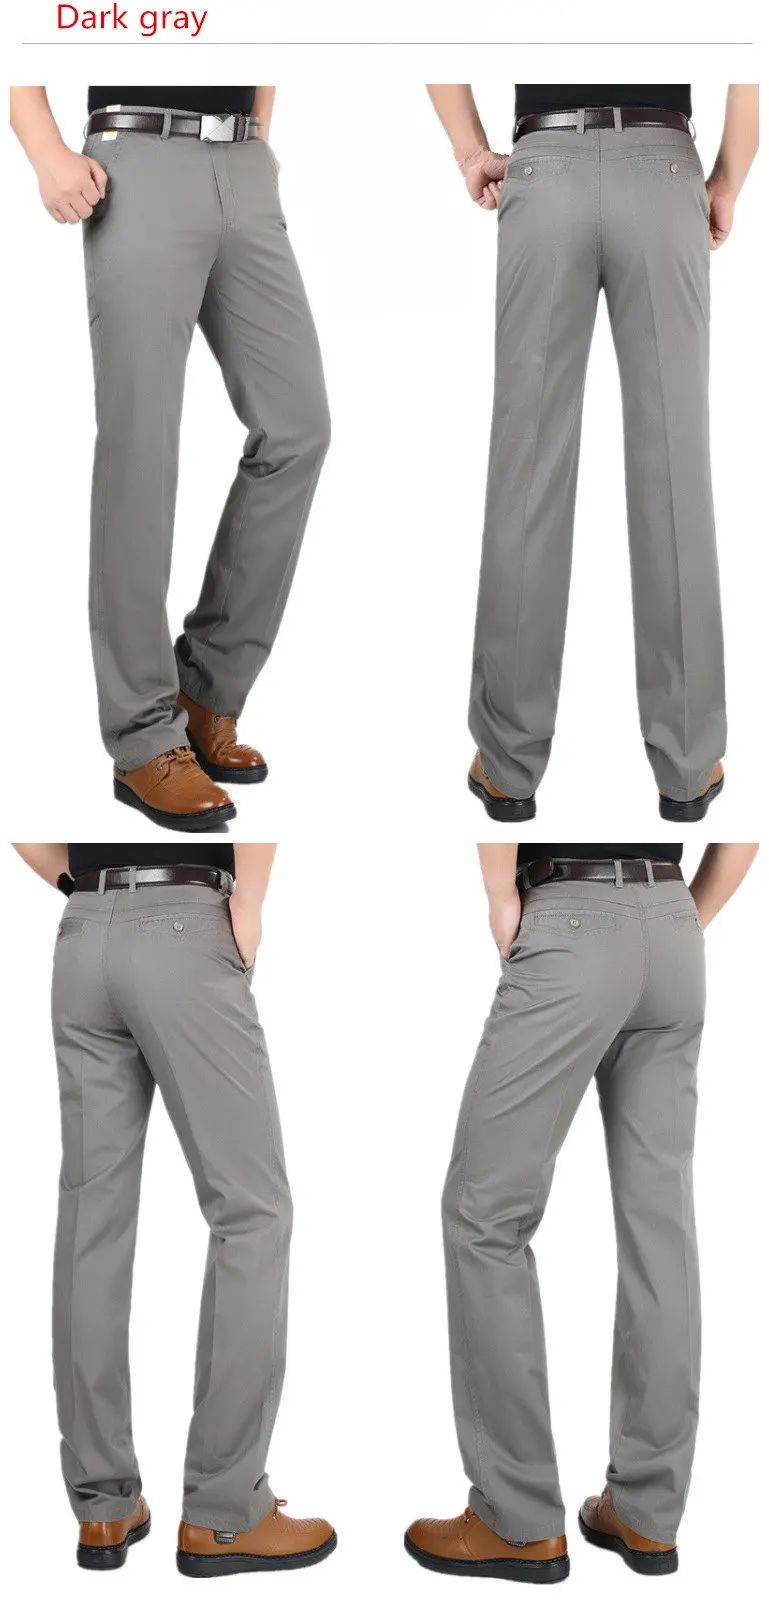 MRMT 2019 бренд мужской Штаны Хлопок повседневные тонкие мужские Штаны высокая талия широкие прямые брюки